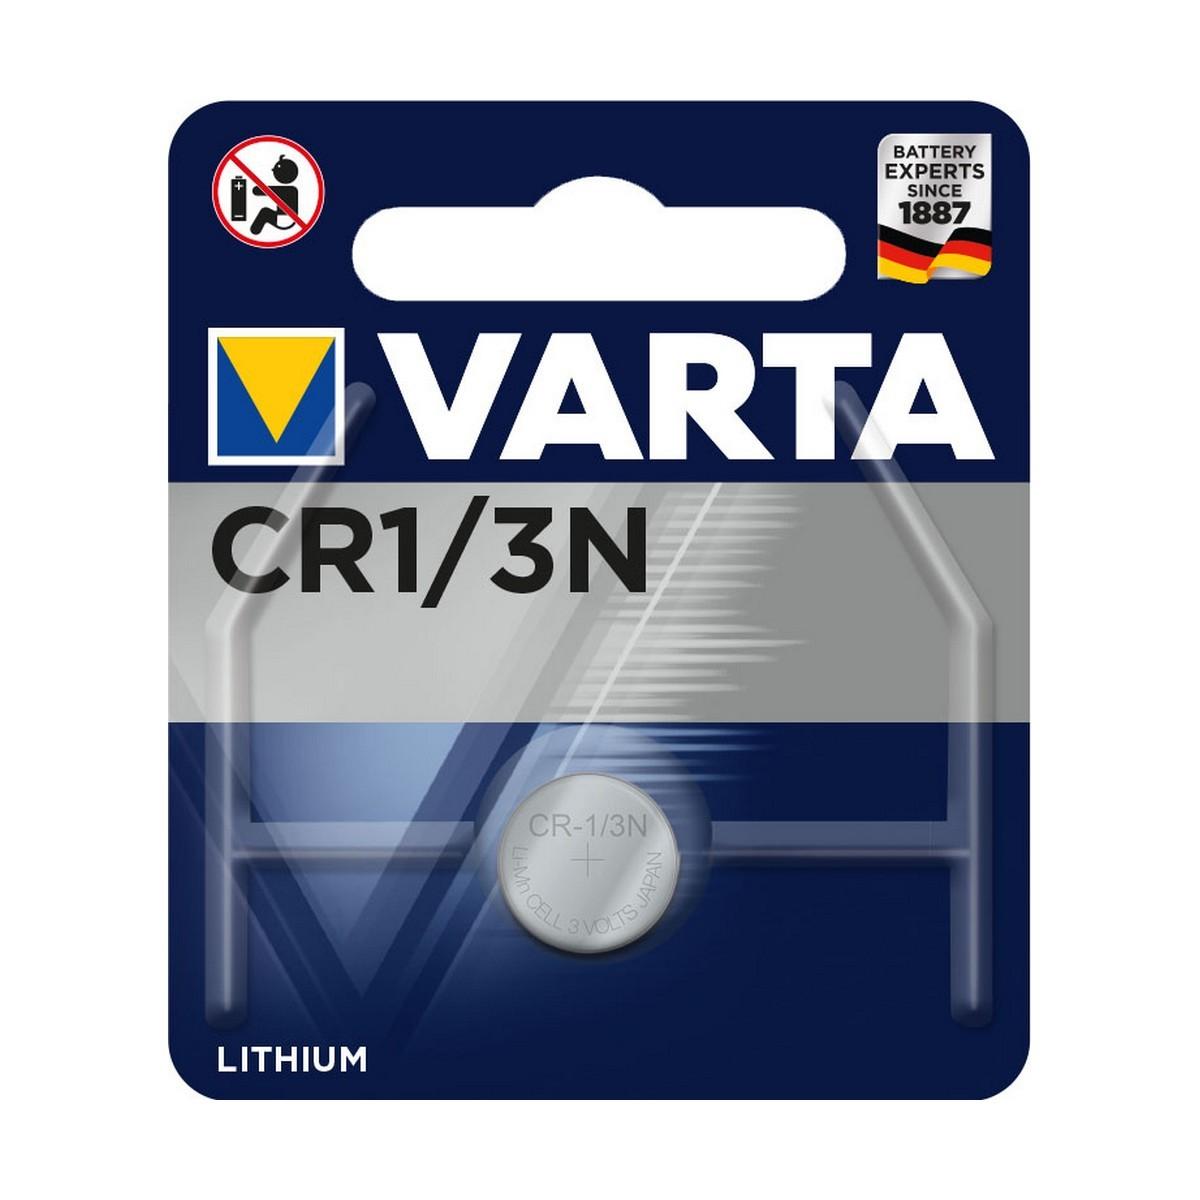 Se Varta CR1/3N 2L76 - Batteri hos Boligcenter.dk